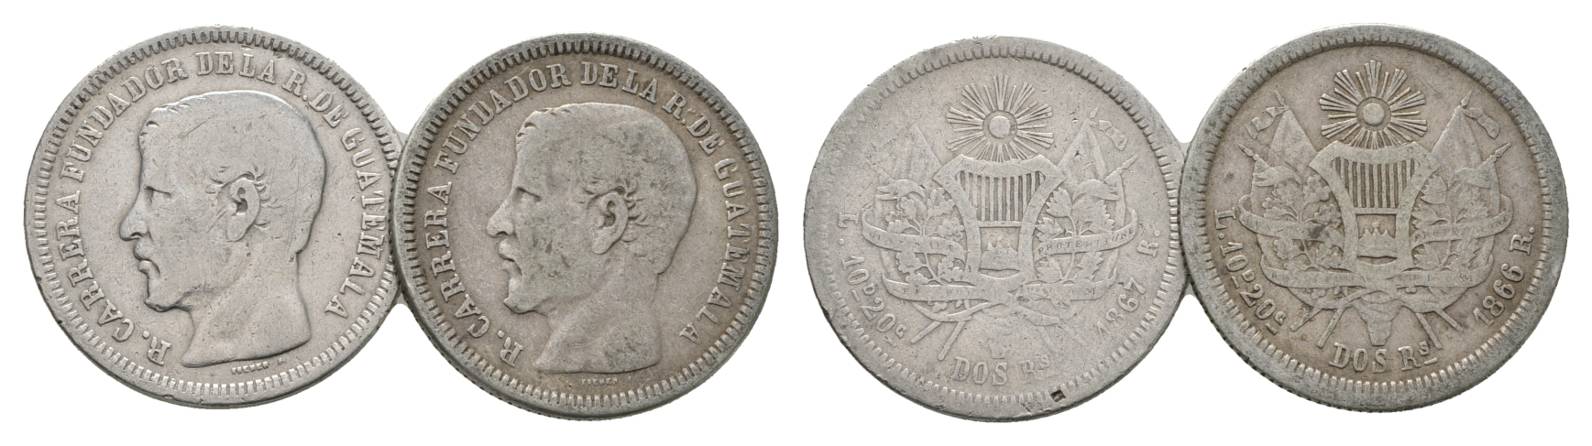  Guatemala, 2 Real 1867/66   